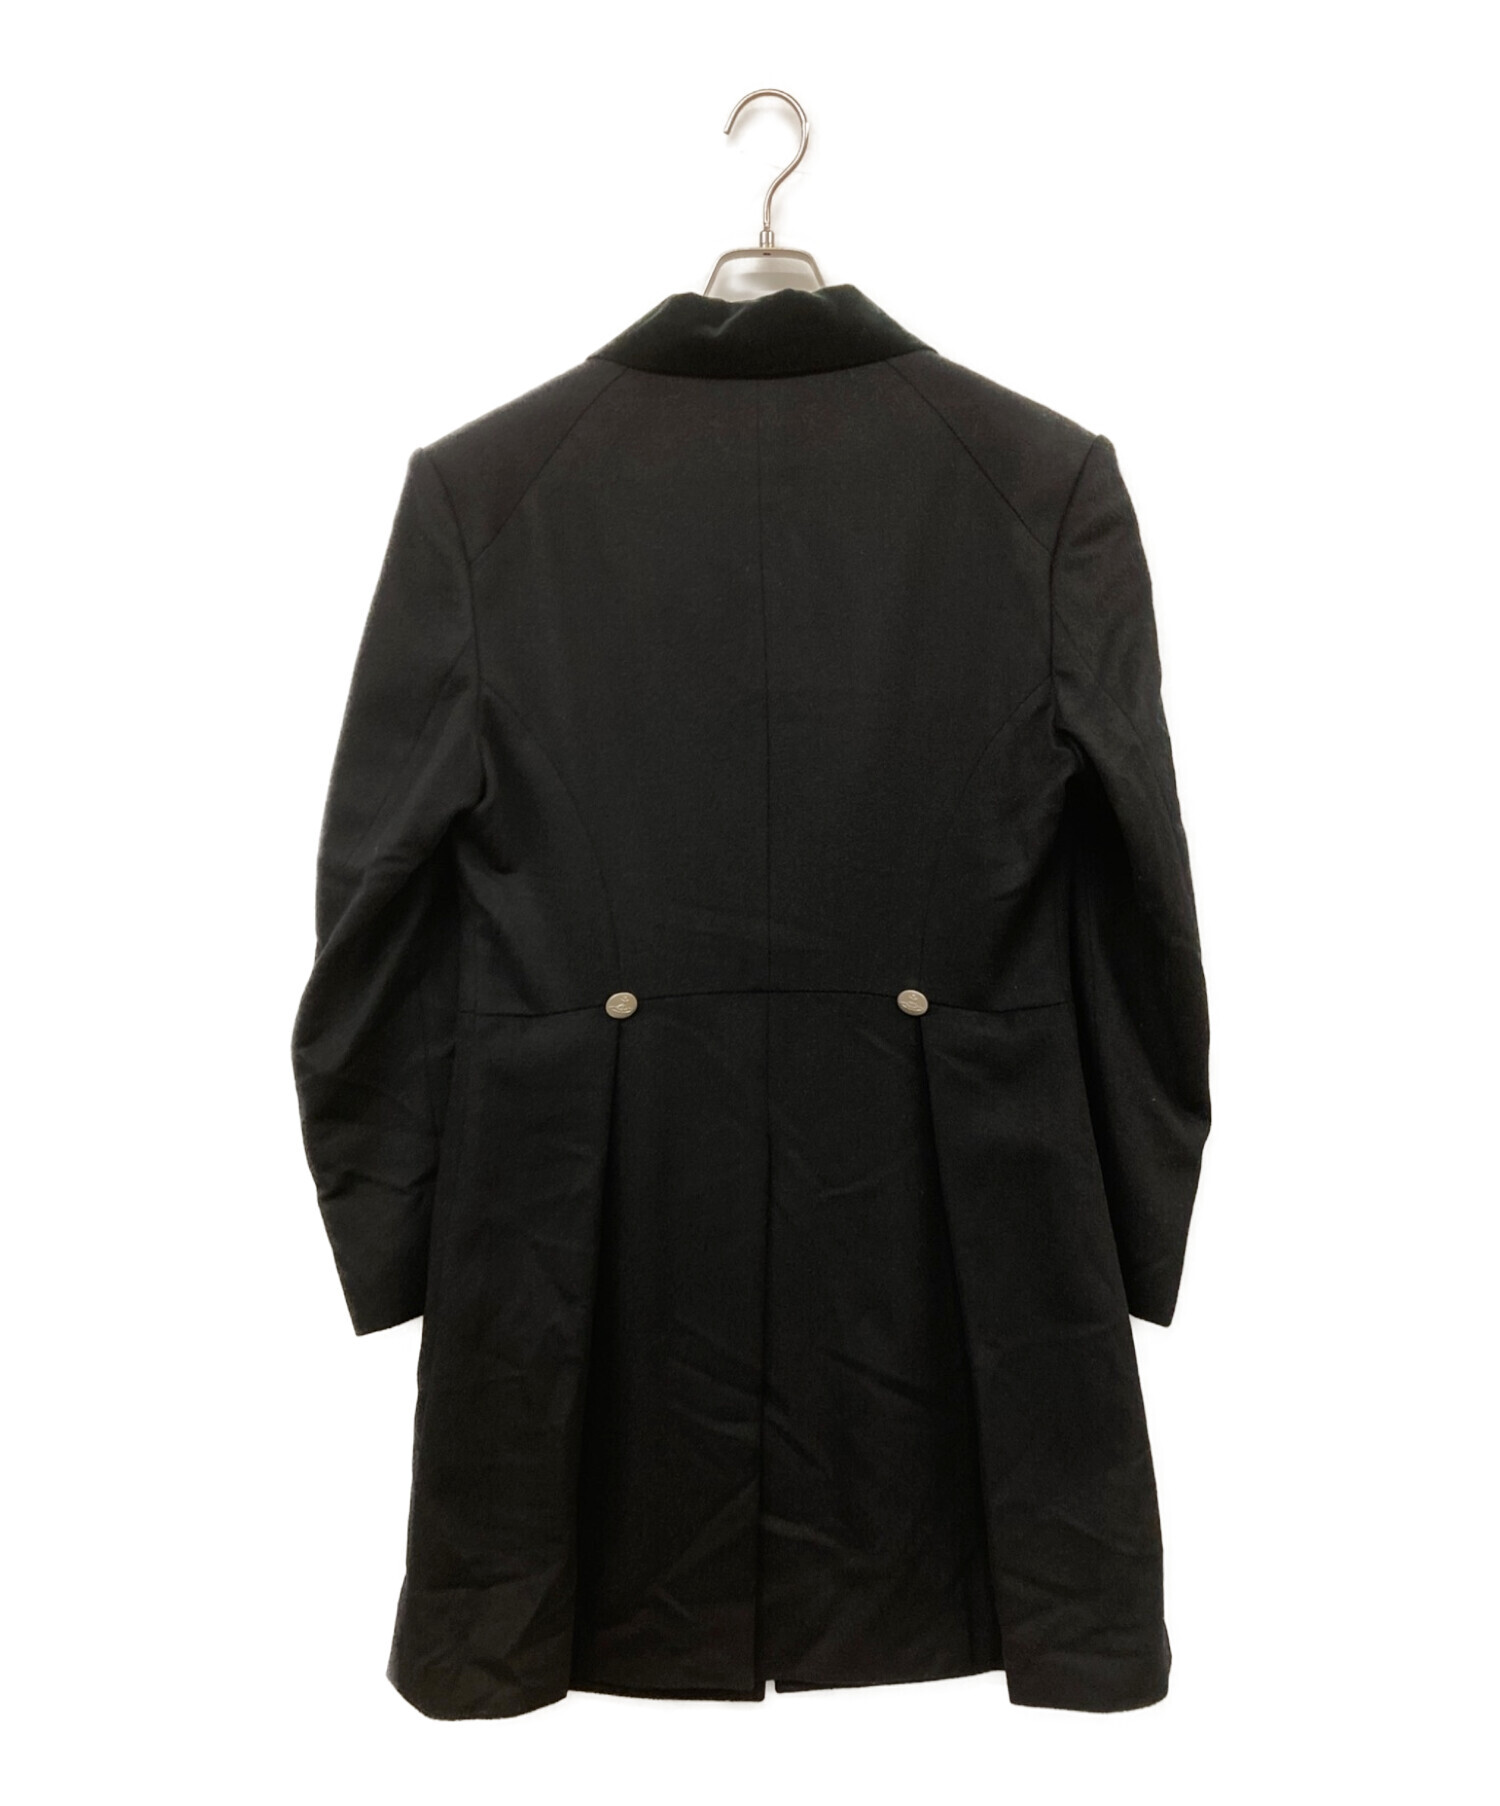 Vivienne Westwood man (ヴィヴィアン ウェストウッド マン) ウールカシミア燕尾コート ブラック サイズ:46